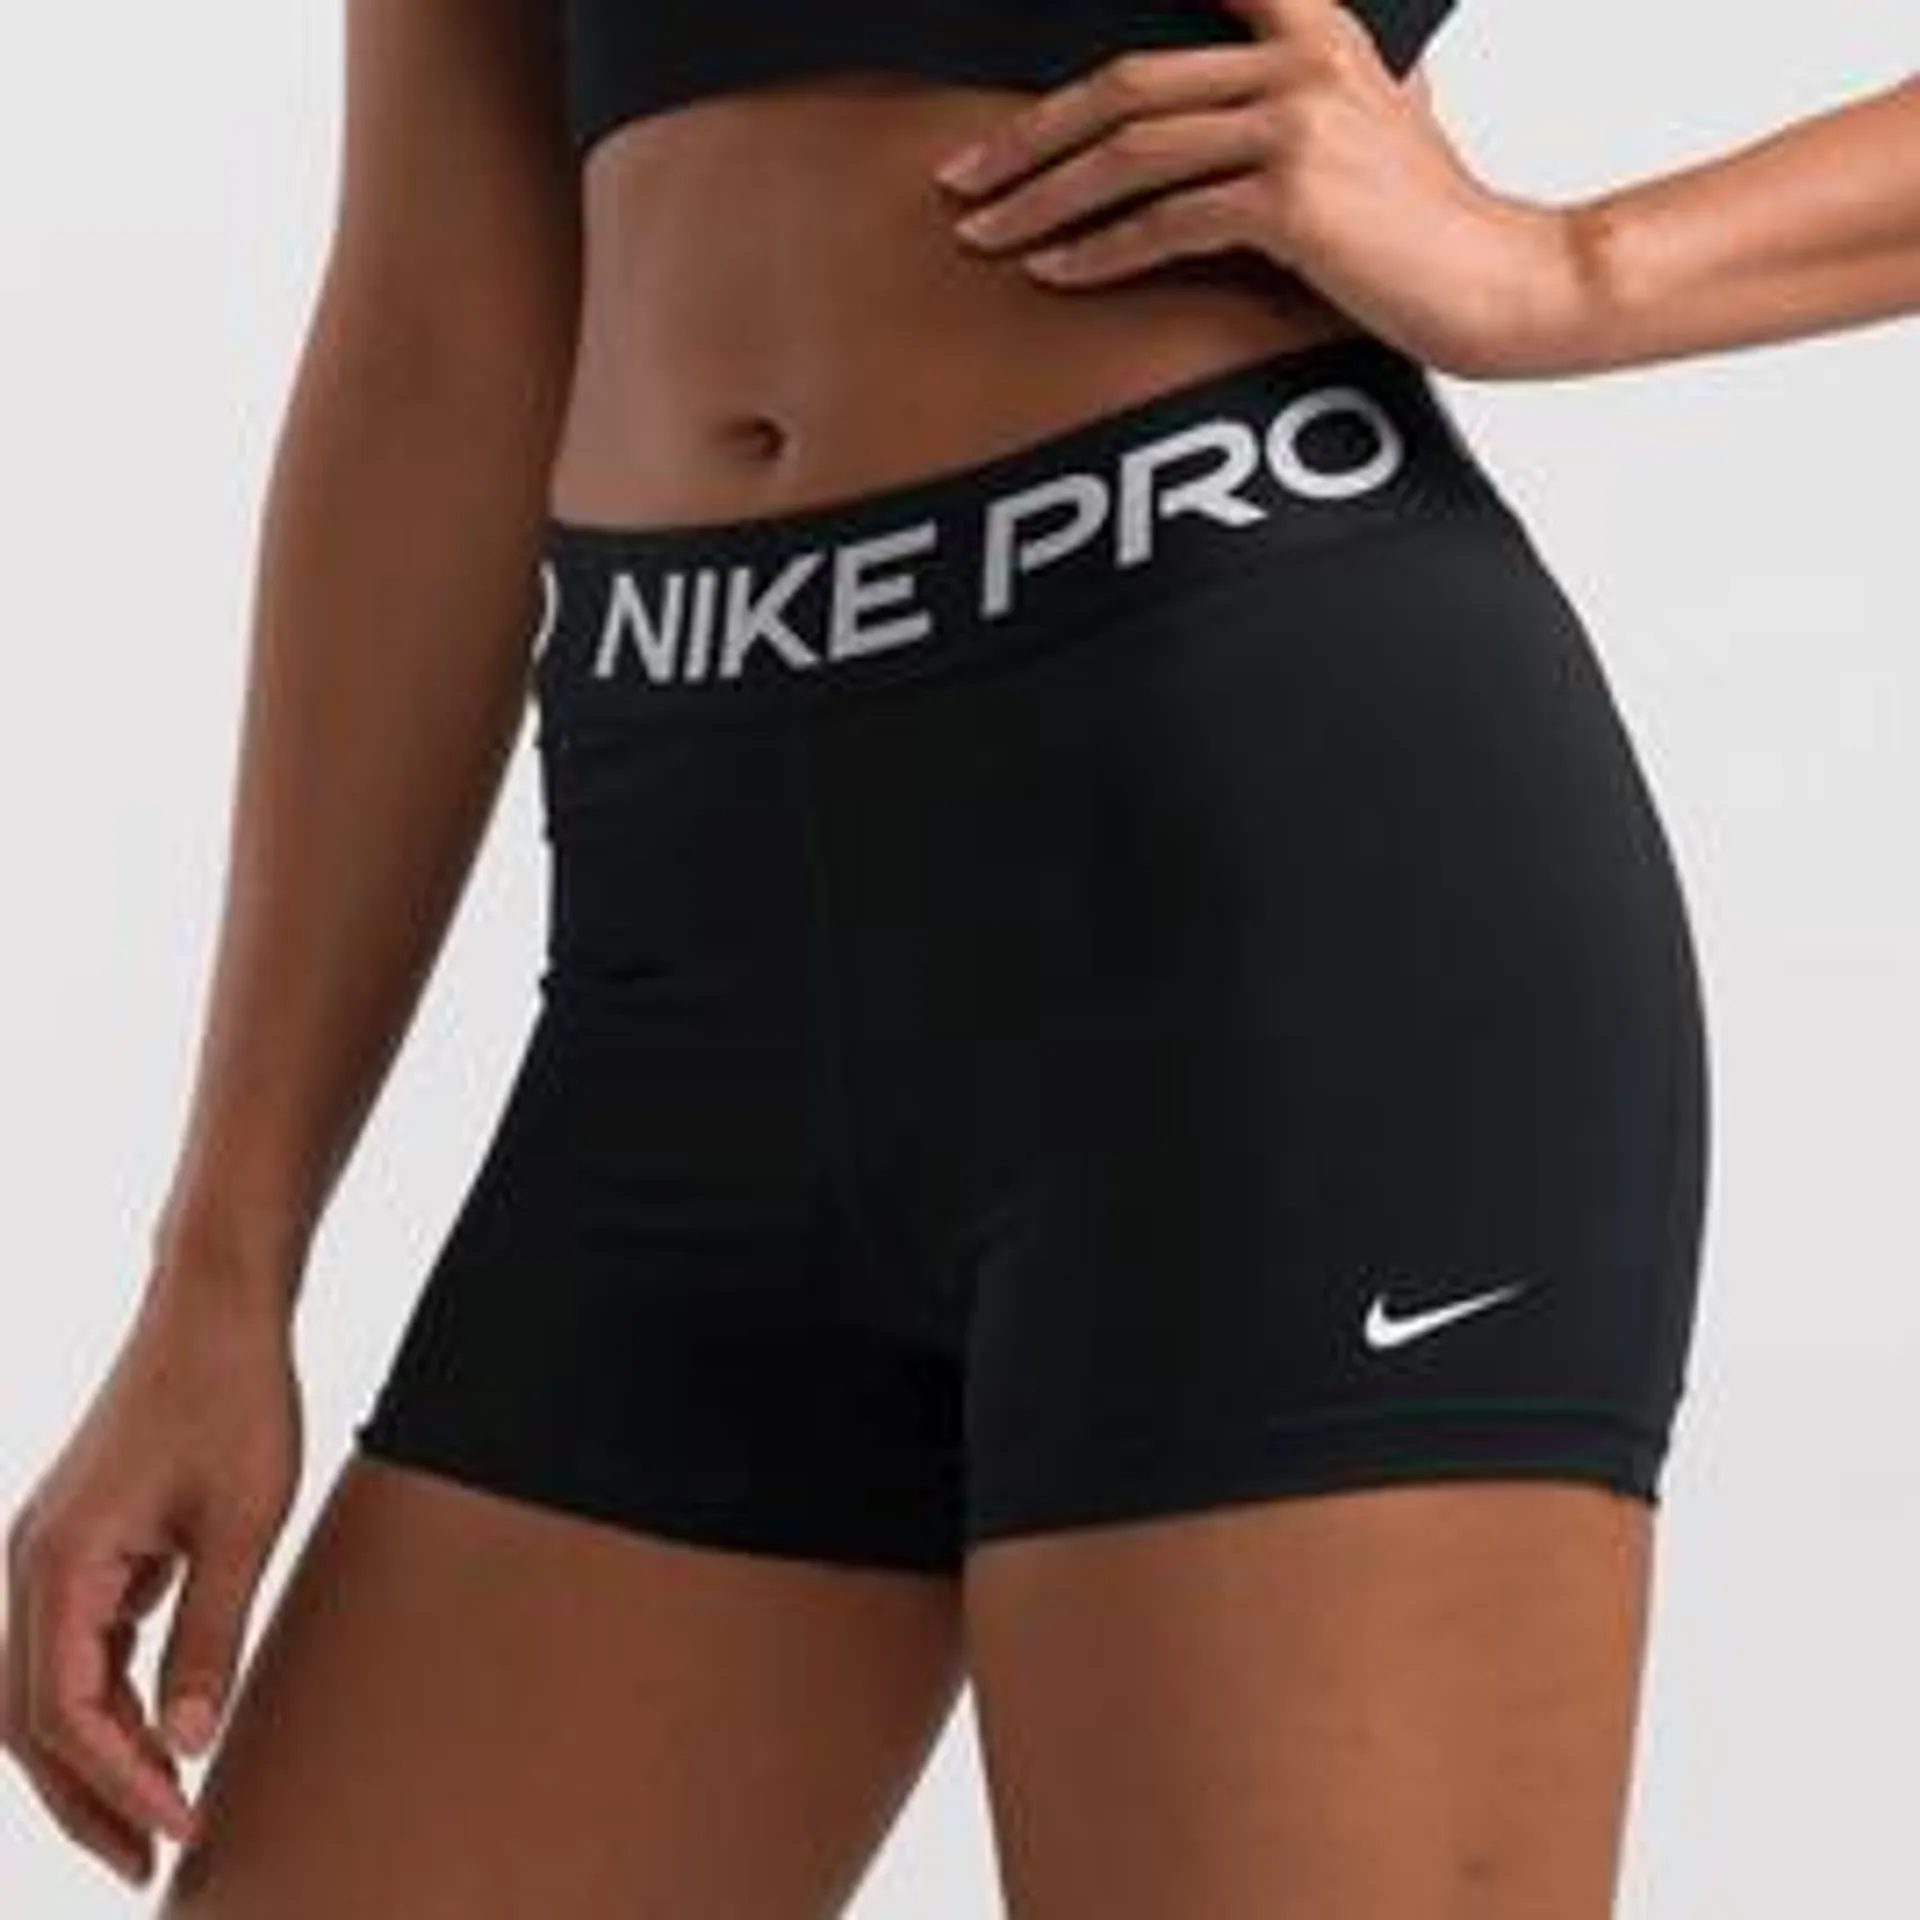 Nike Pro 365 3 Inch Training Shorts